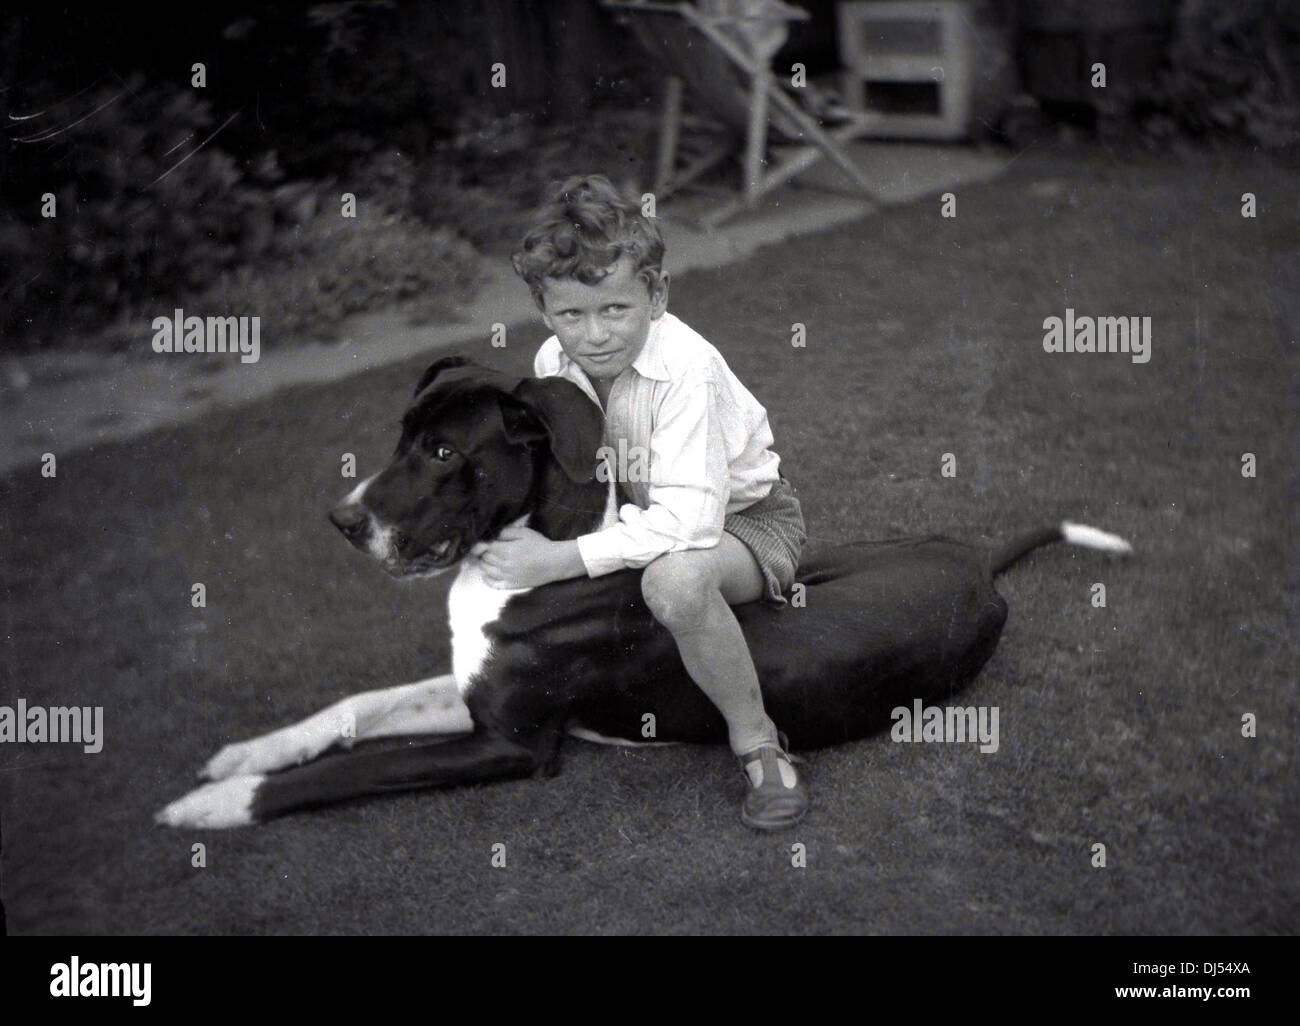 Historisches Bild von 1930s, ein kleiner Junge, der draußen in einem Garten auf seinem Hund sitzt und ihn umarmt. Stockfoto